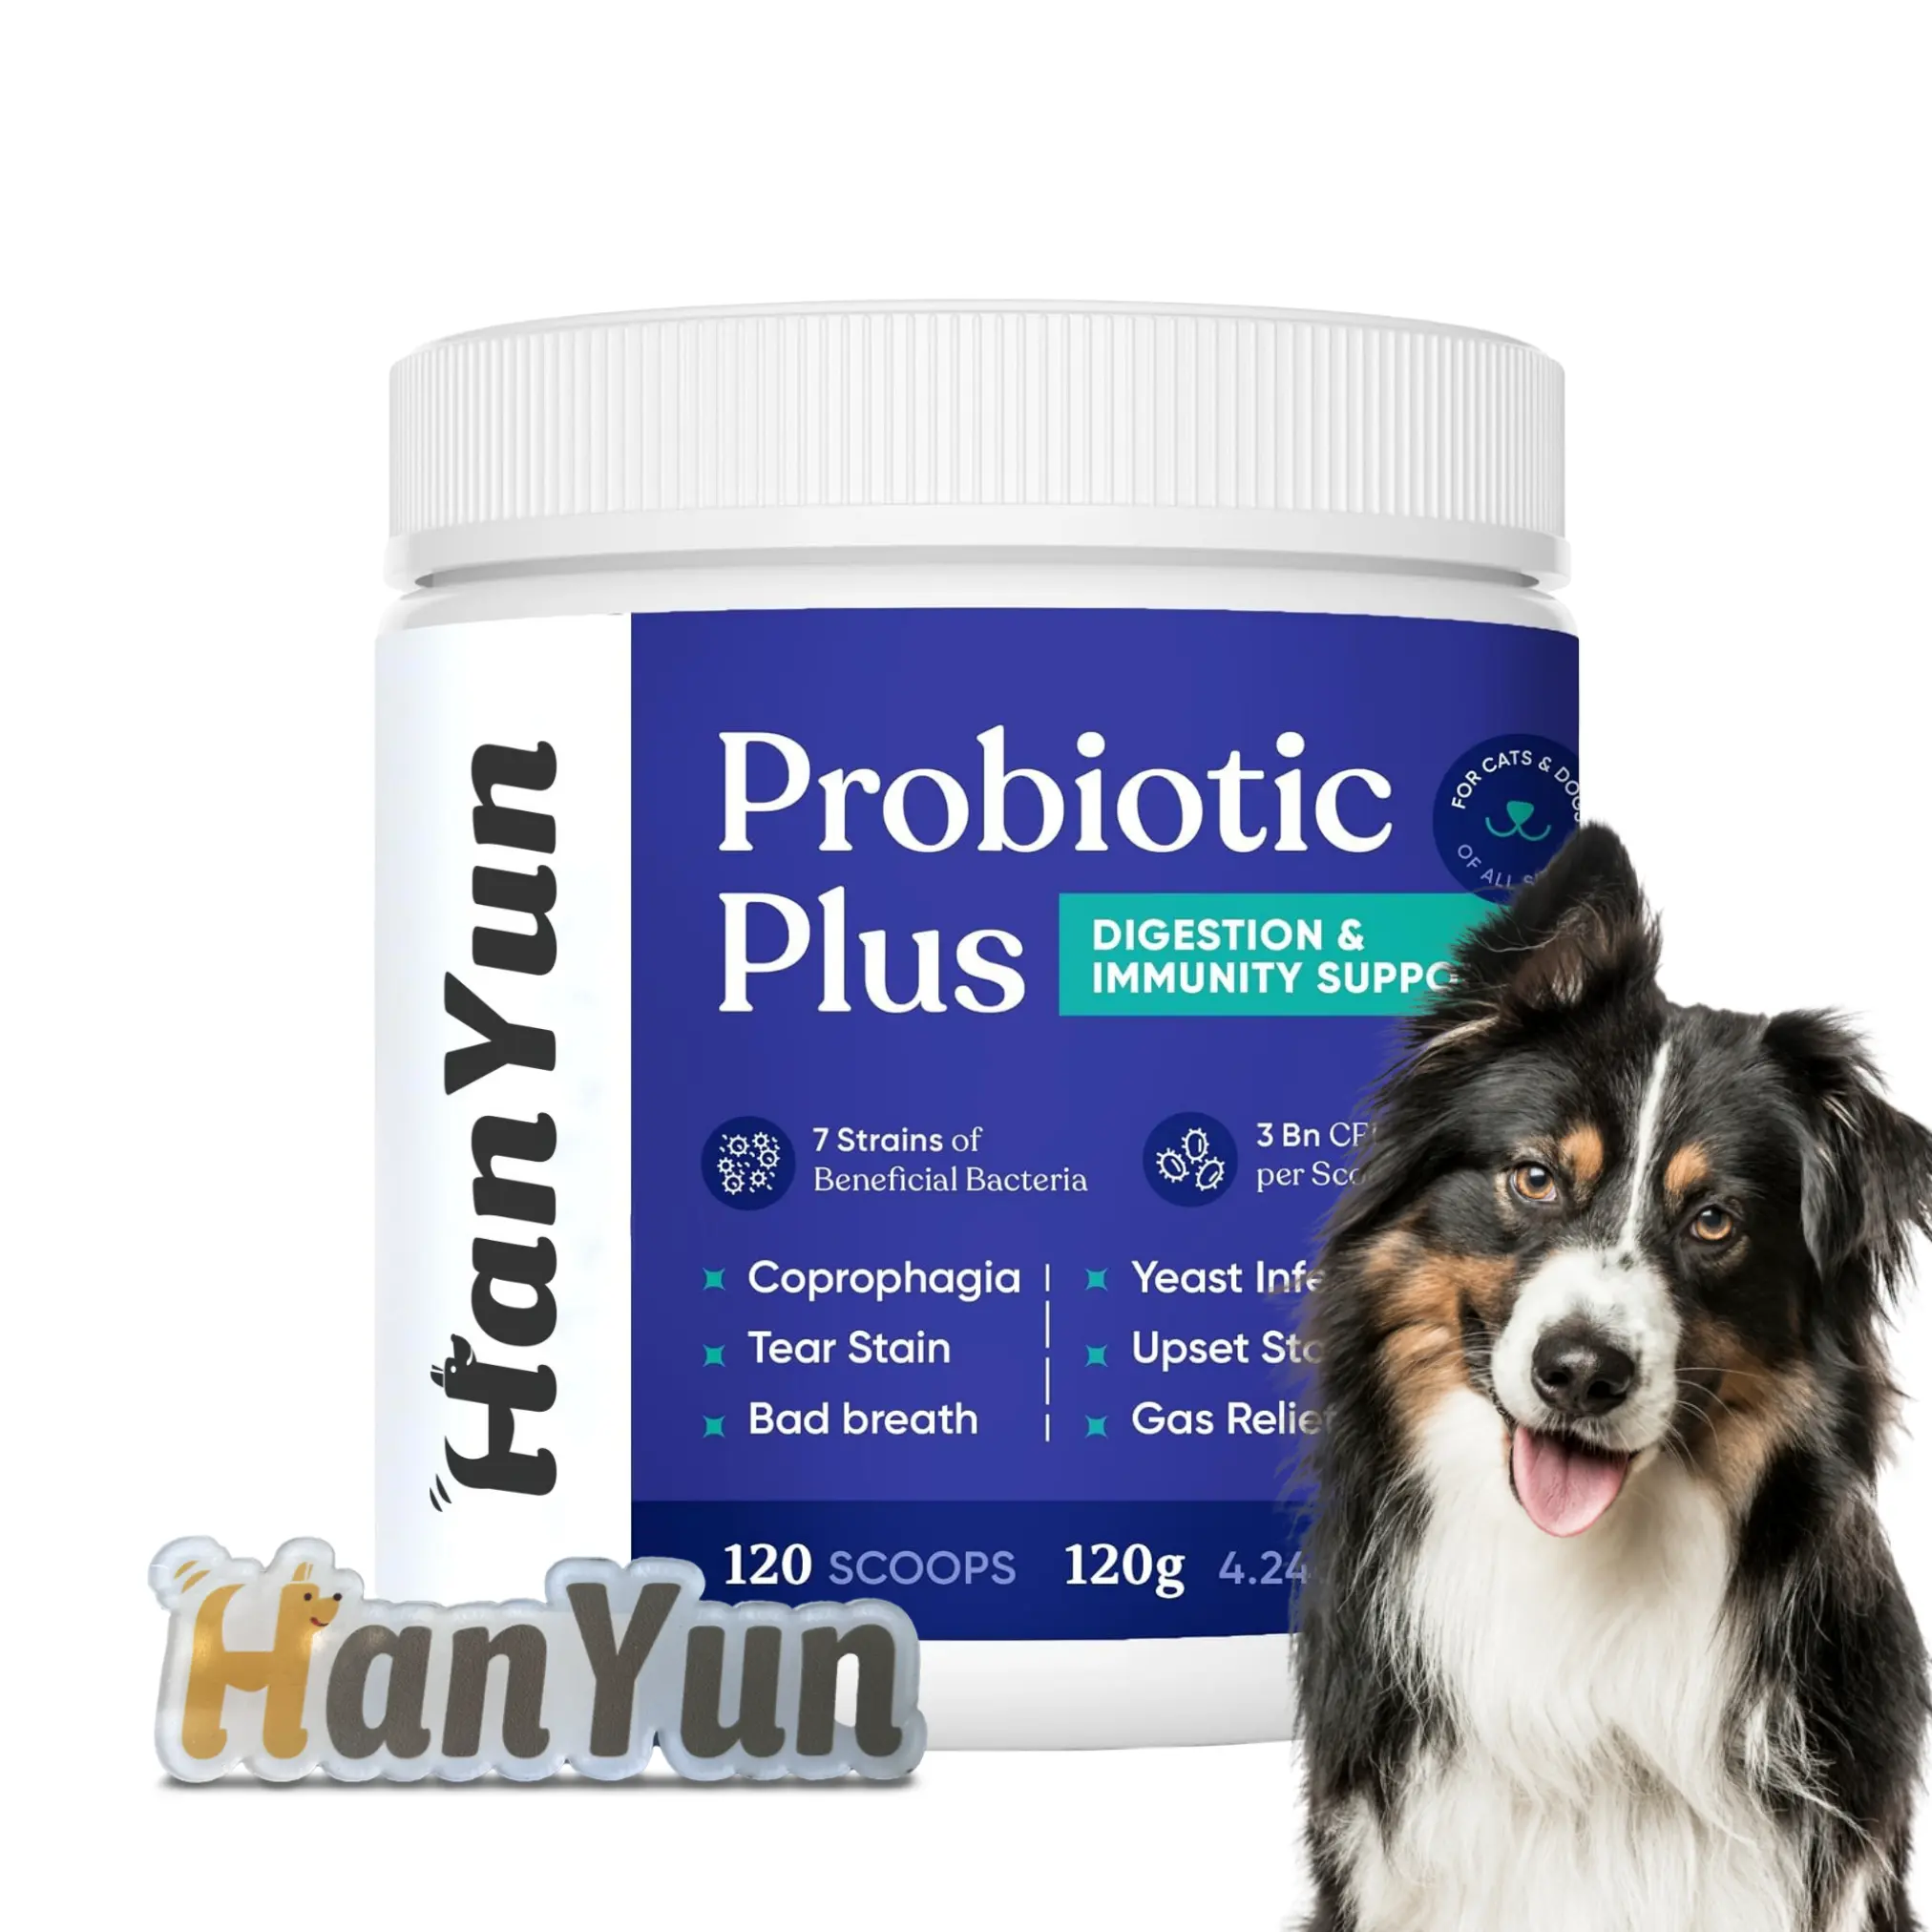 La poudre probiotique soutient les estomacs sensibles-Enzyme digestive et santé de la flore intestinale avec citrouille pour supplément pour chien de compagnie